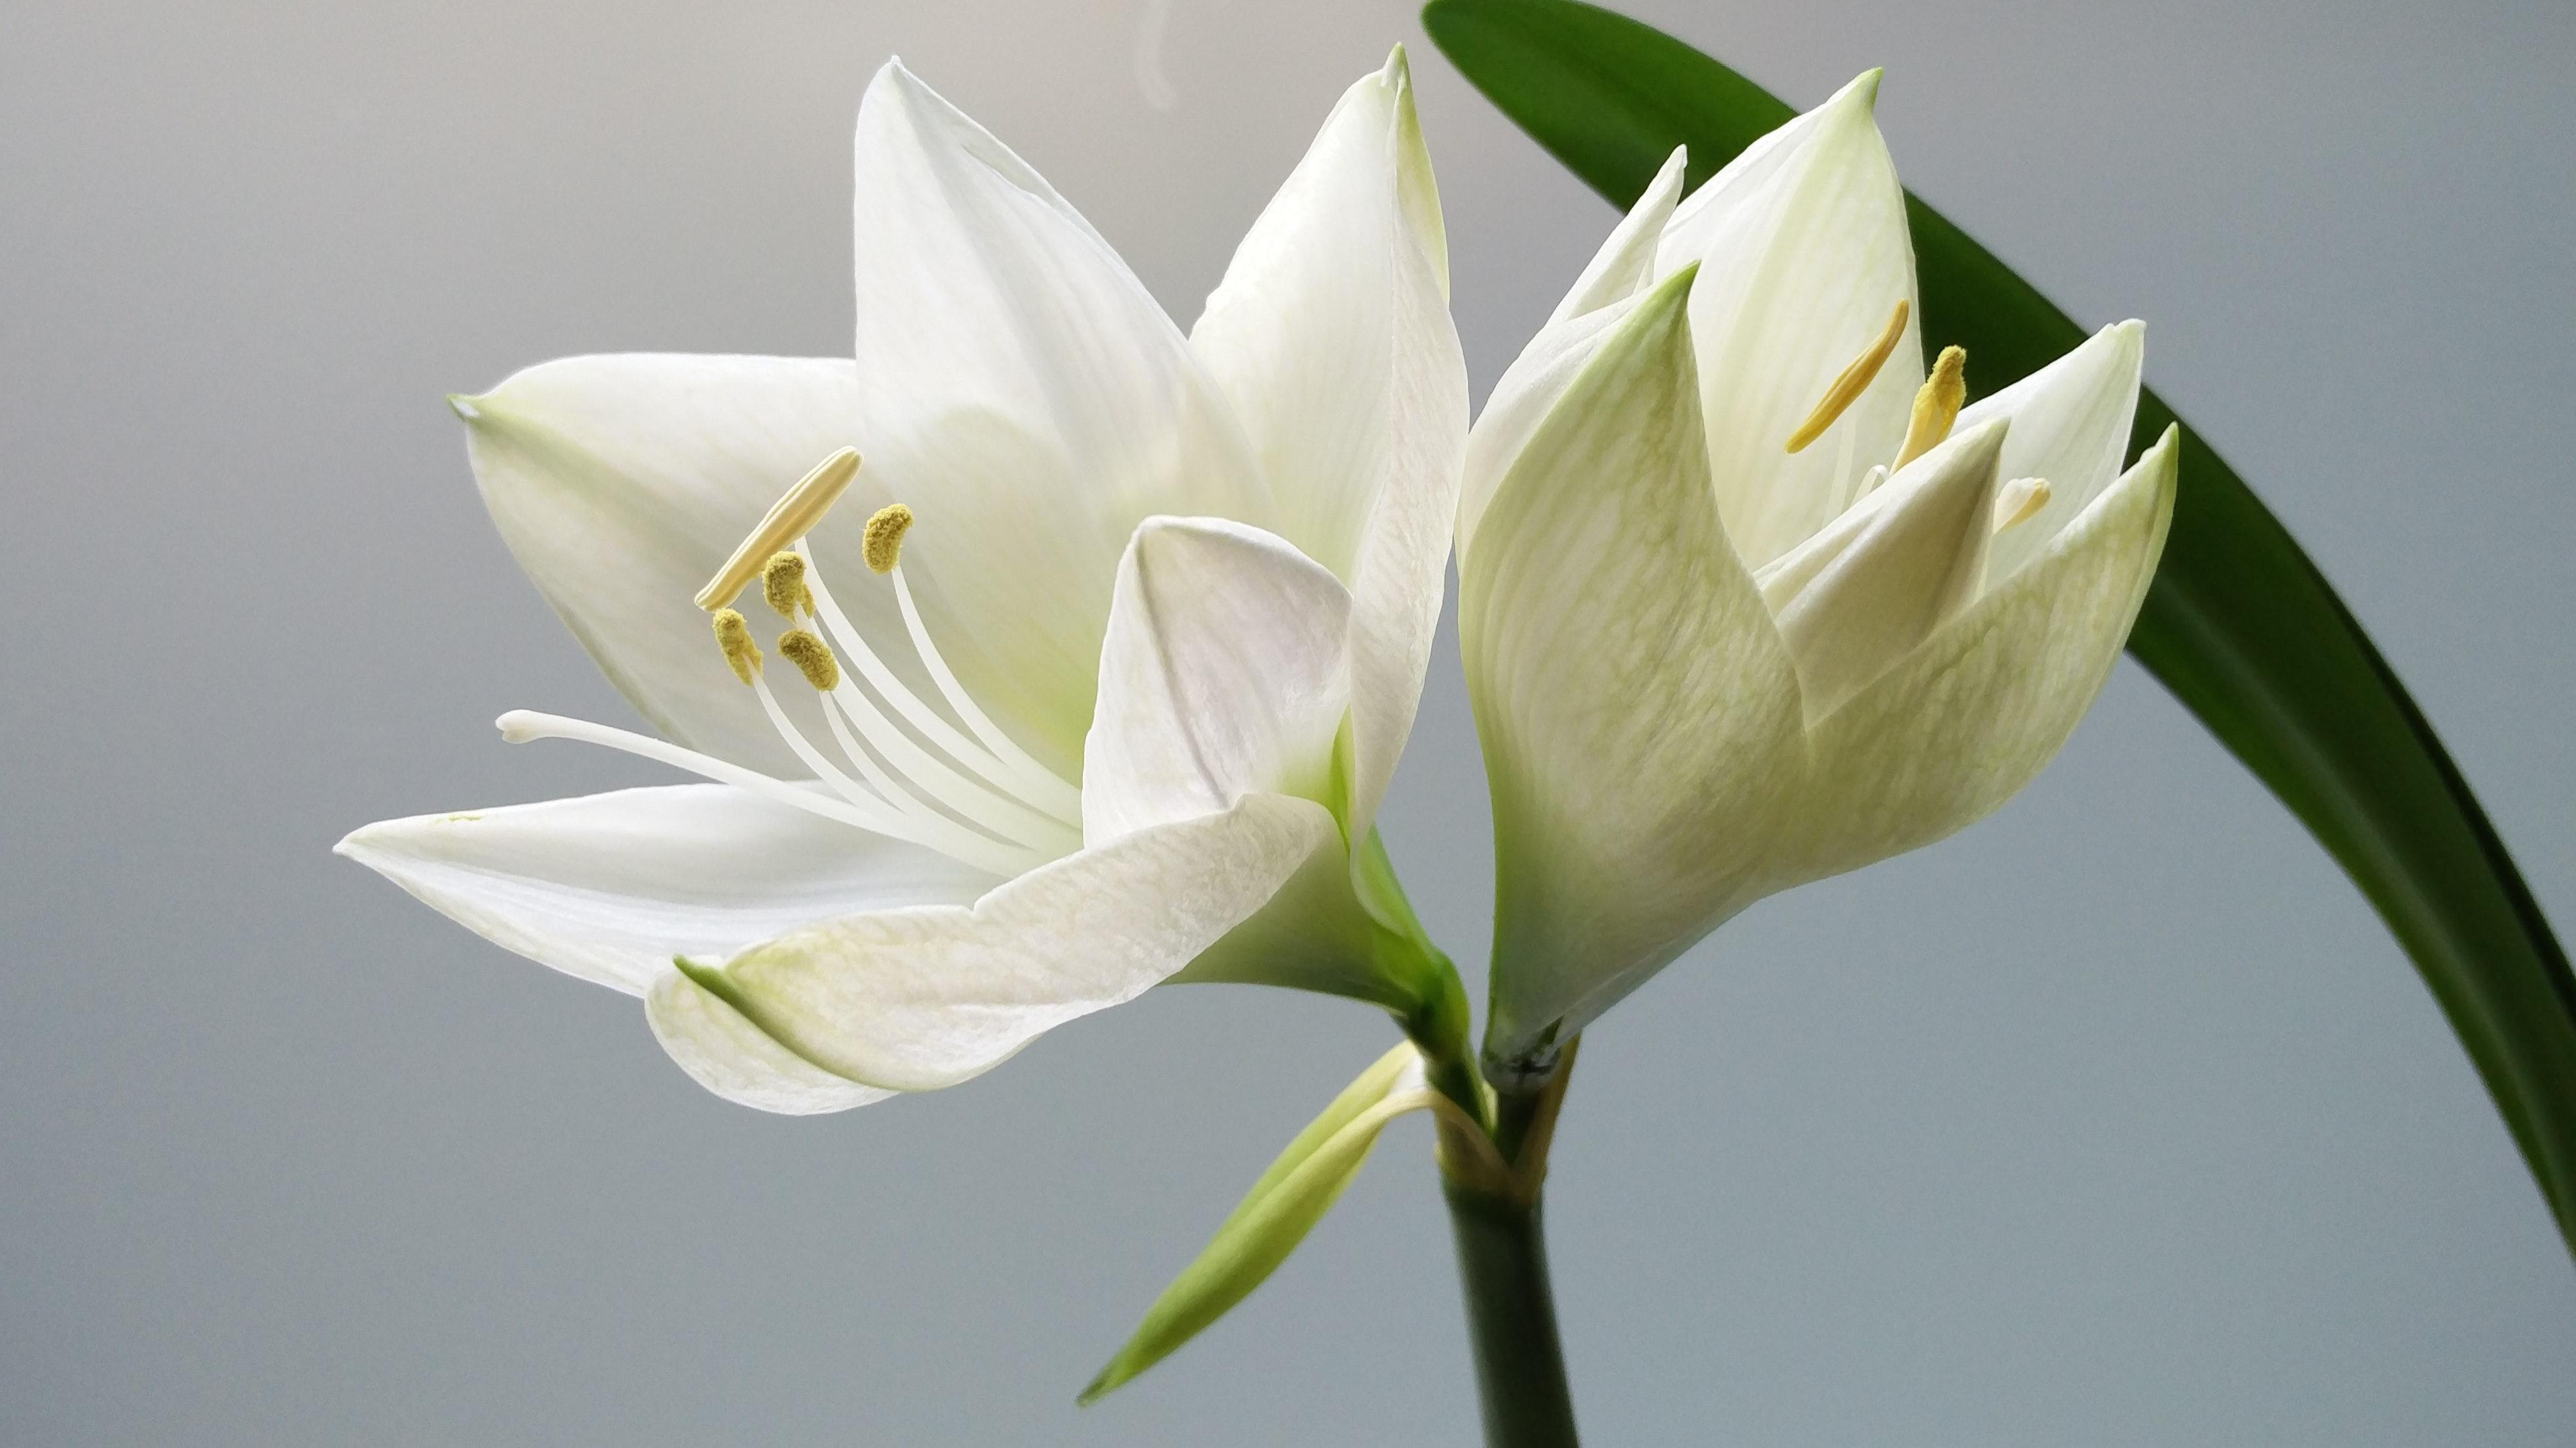 Close Up Photography Of White Amaryllis Flowers · Free